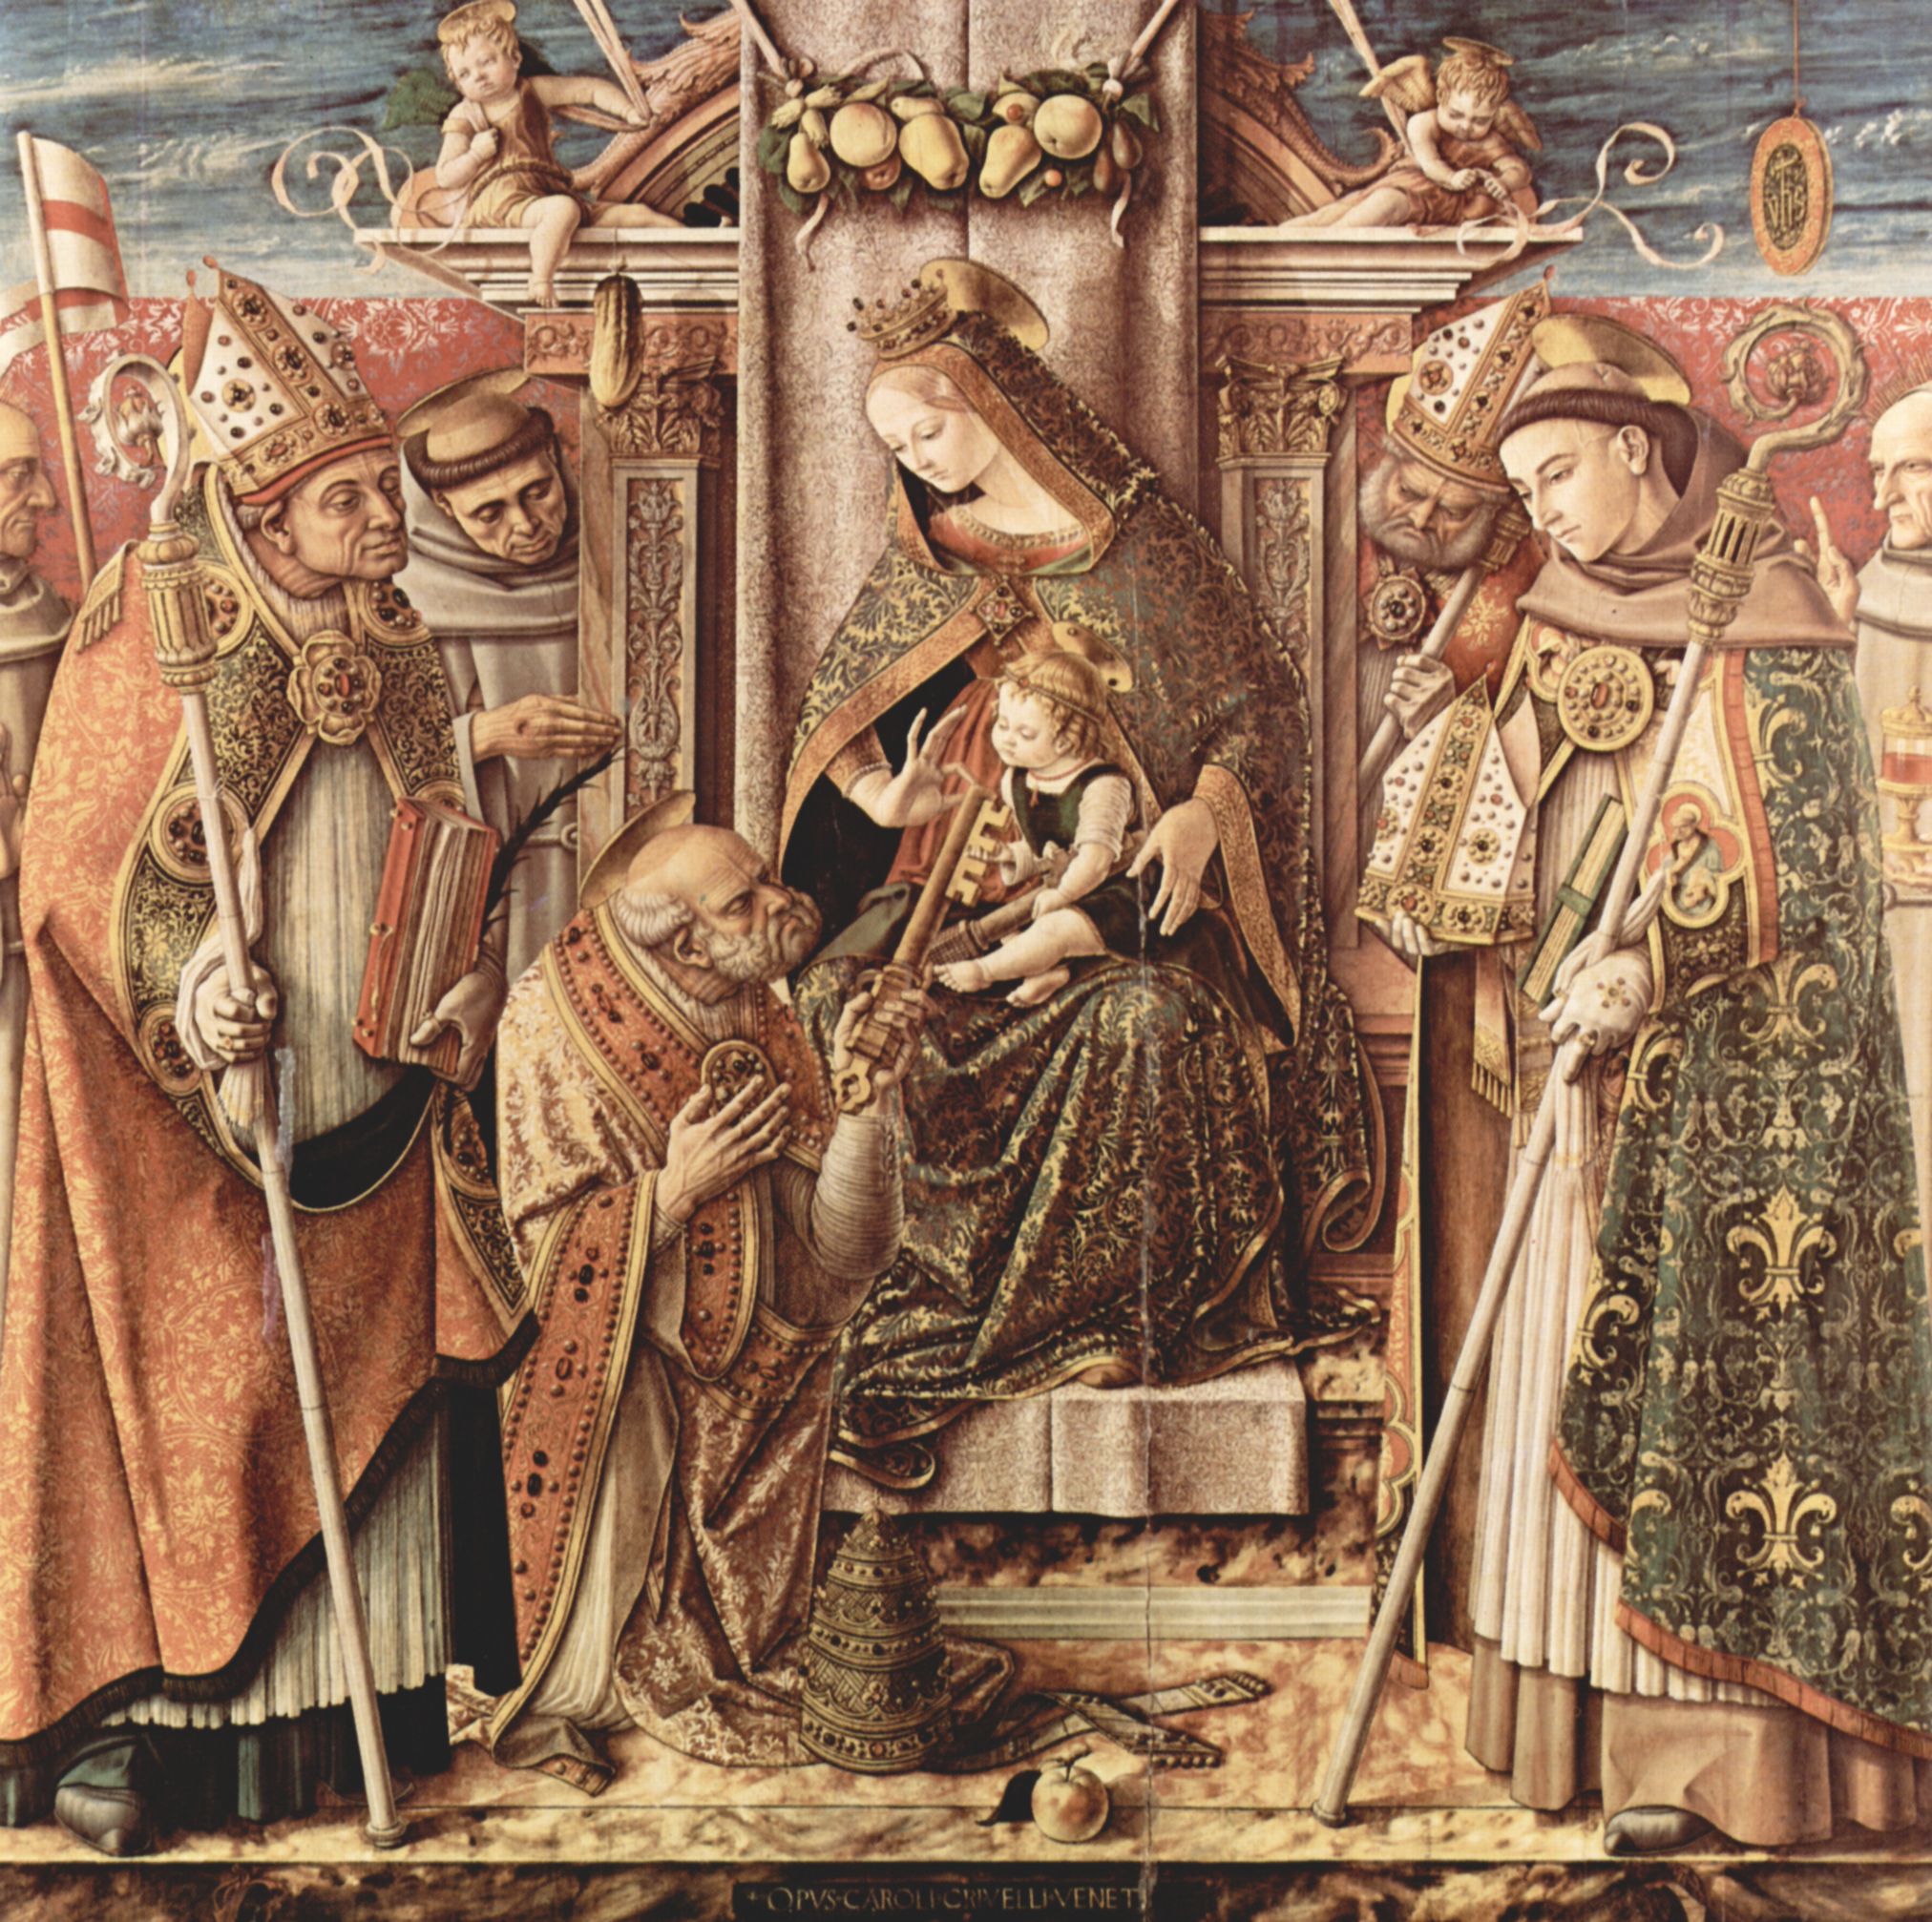 Carlo Crivelli: Die bergabe des Schlssels, Szene: Thronendende Madonna mit Christuskind, welches Hl. Petrus den Schlssel bergibt